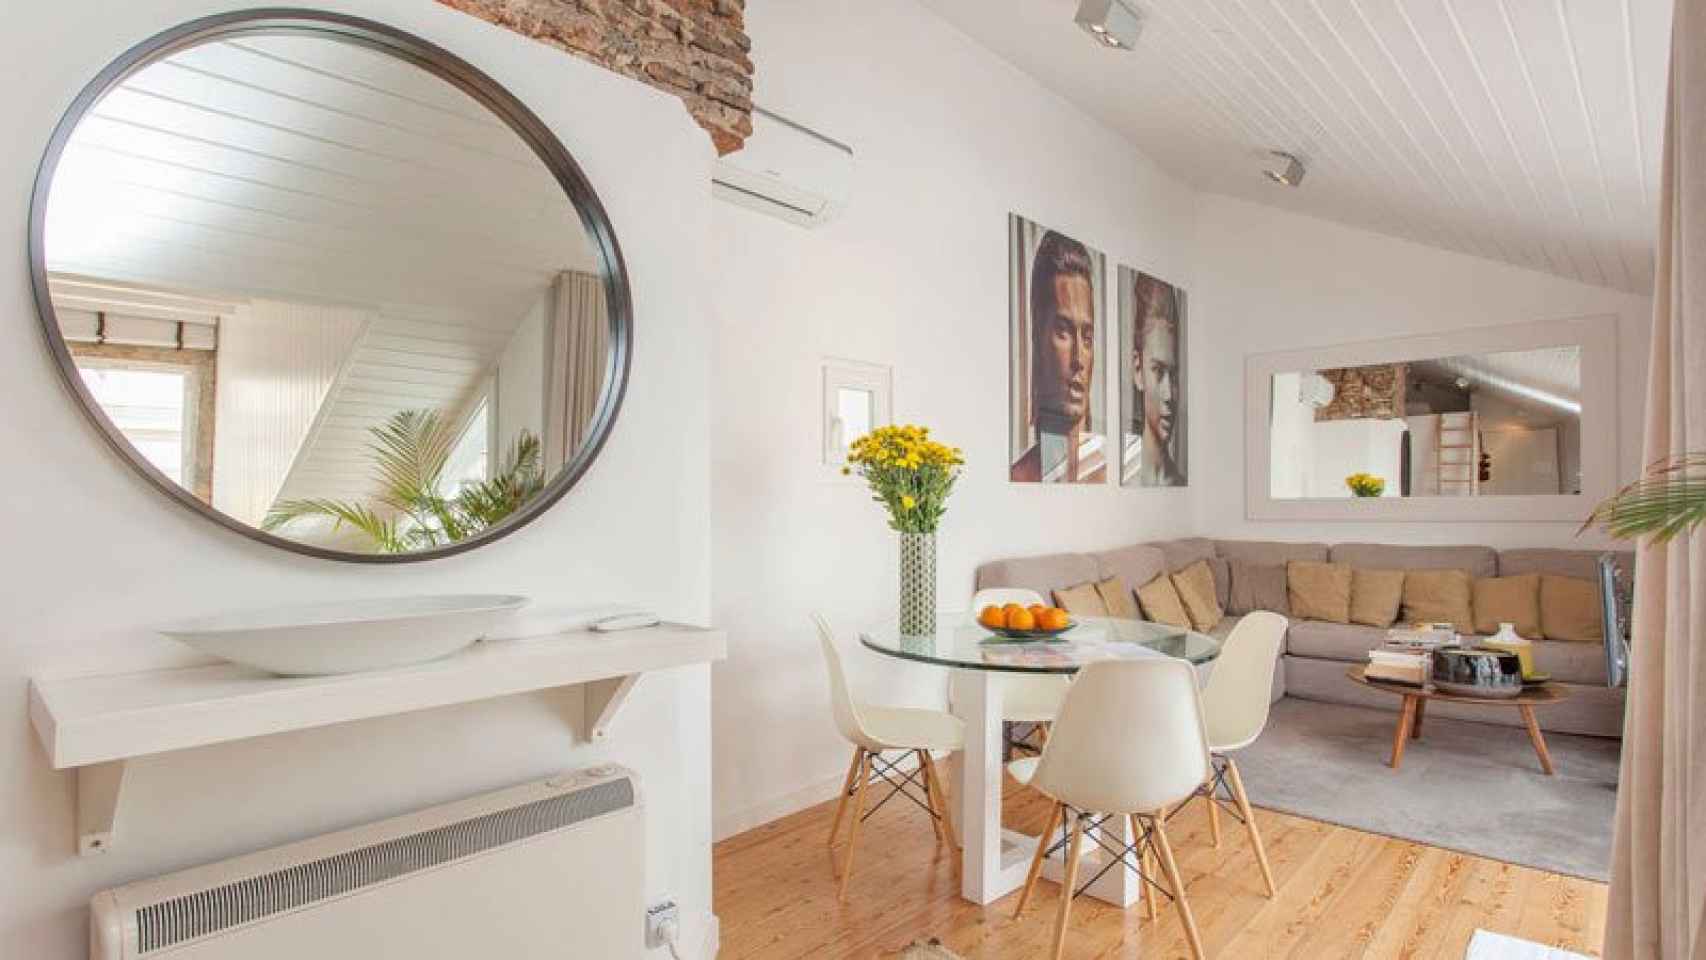 Airbnb recolectaár la tasa turística de Lisboa, de un euro por visitante, a partir de mayo.